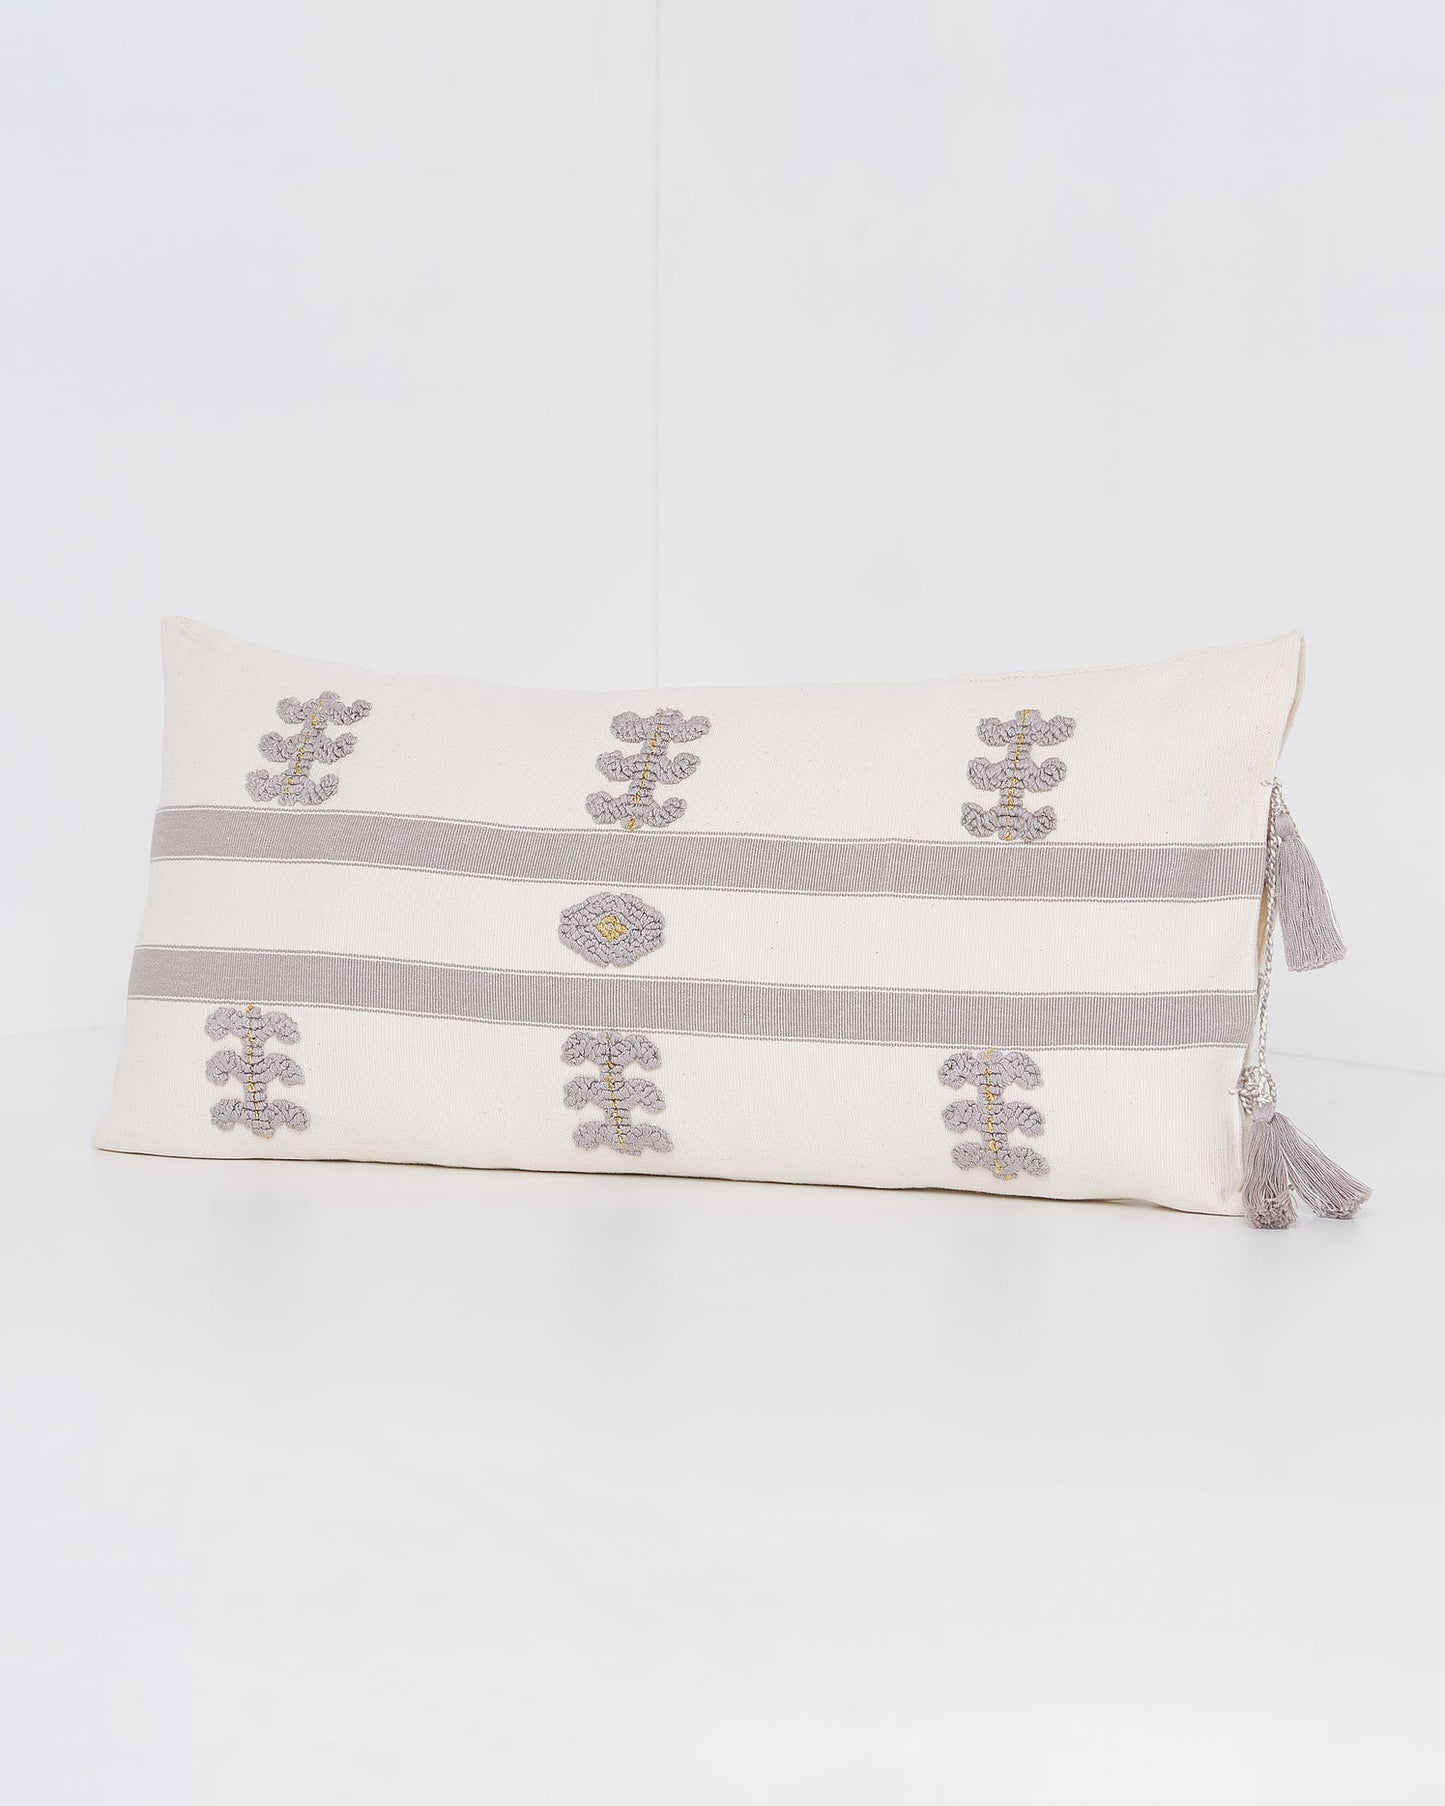 SALE 35% off - Virginia Cotton Throw Pillow White w/ Gray Embroidery